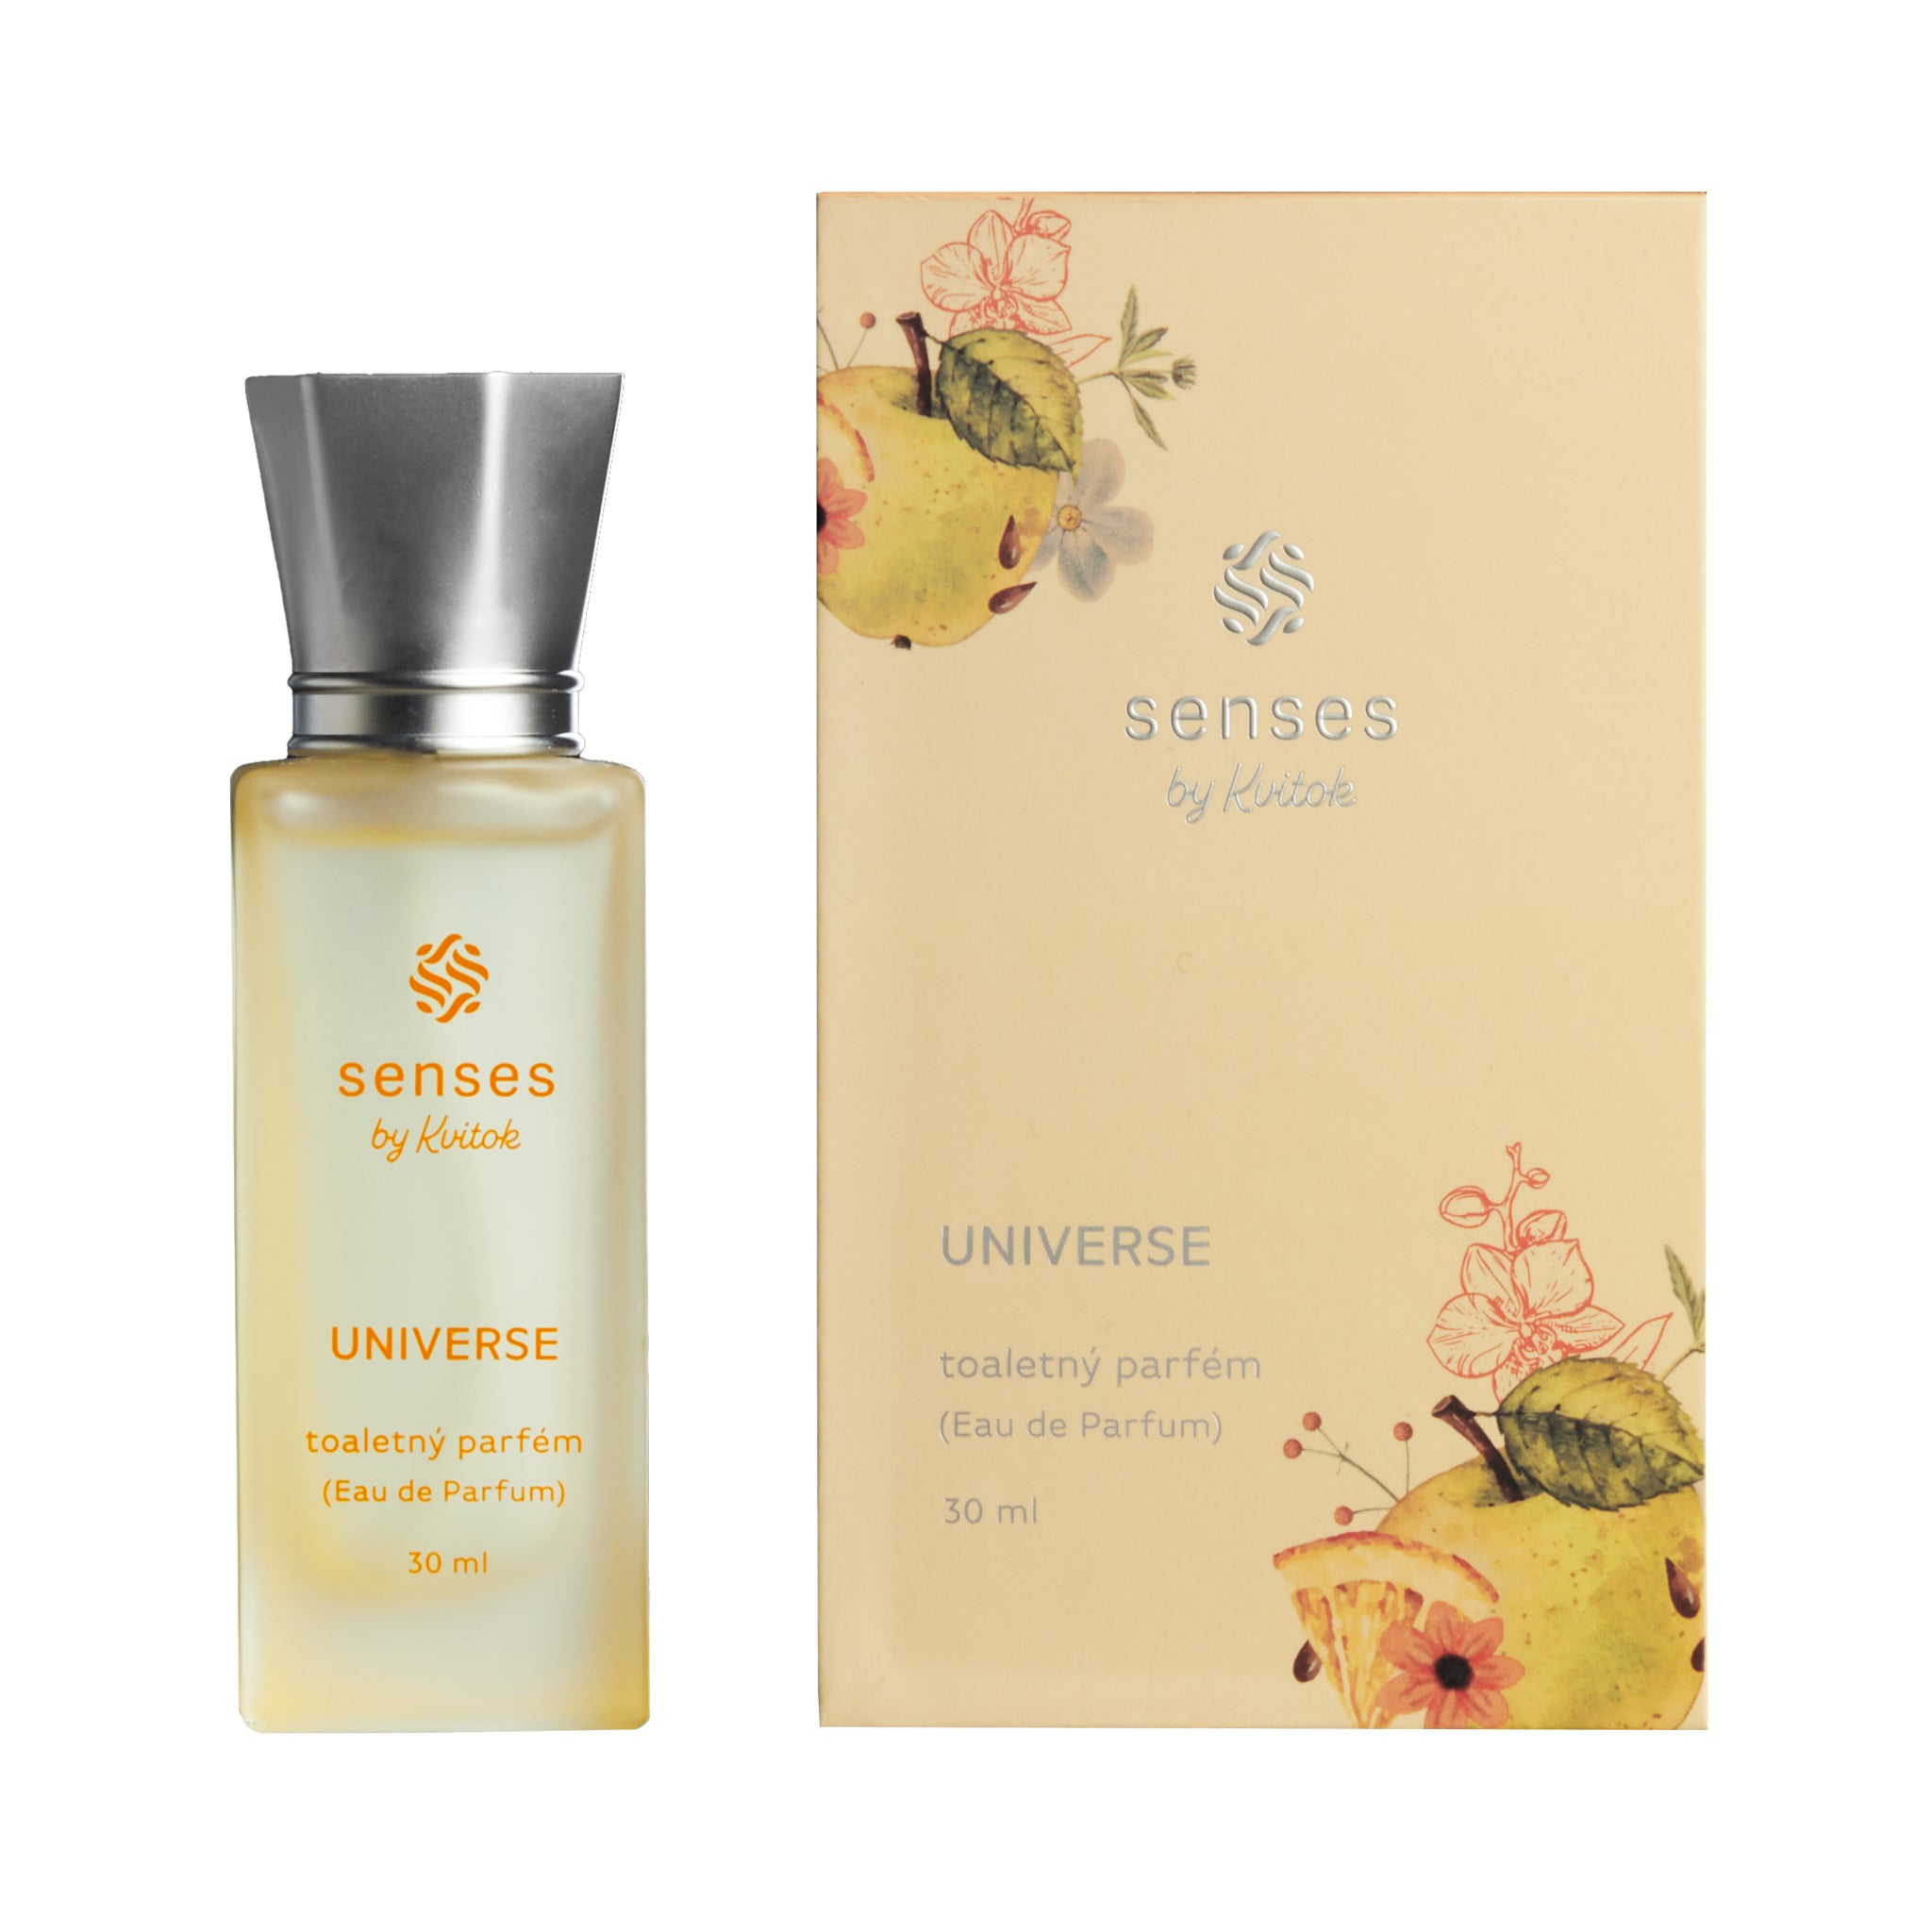 Kvitok Toaletní parfém Universe (30 ml) - svěží unisex vůně Kvitok